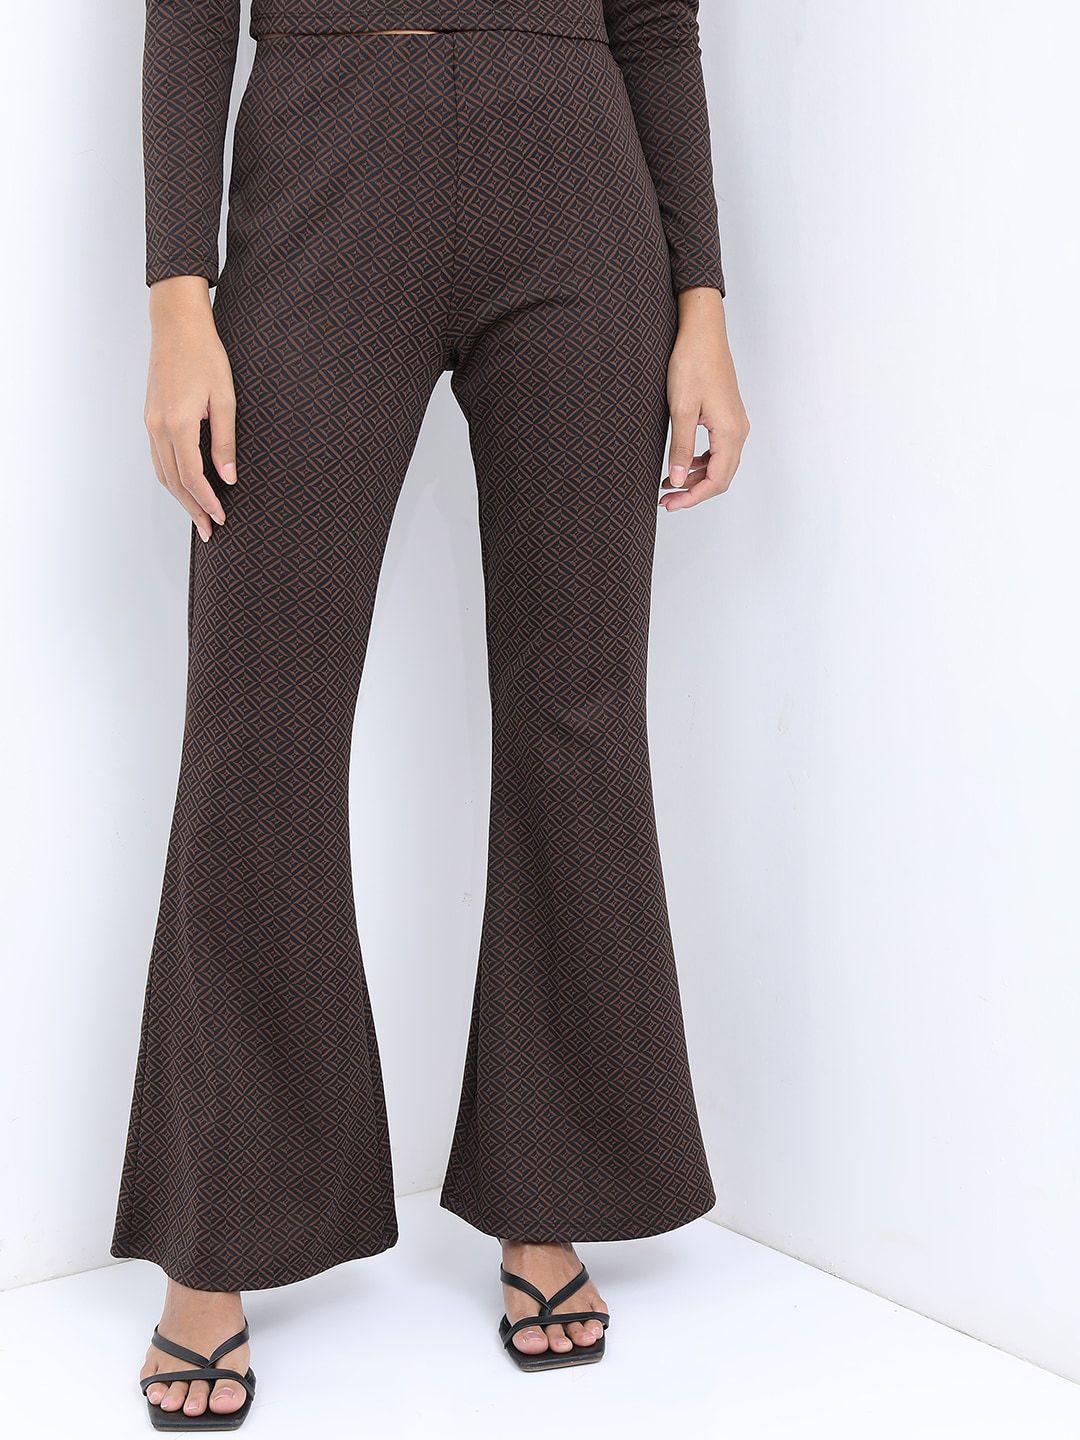 tokyo talkies women brown geometric printed bootcut trousers